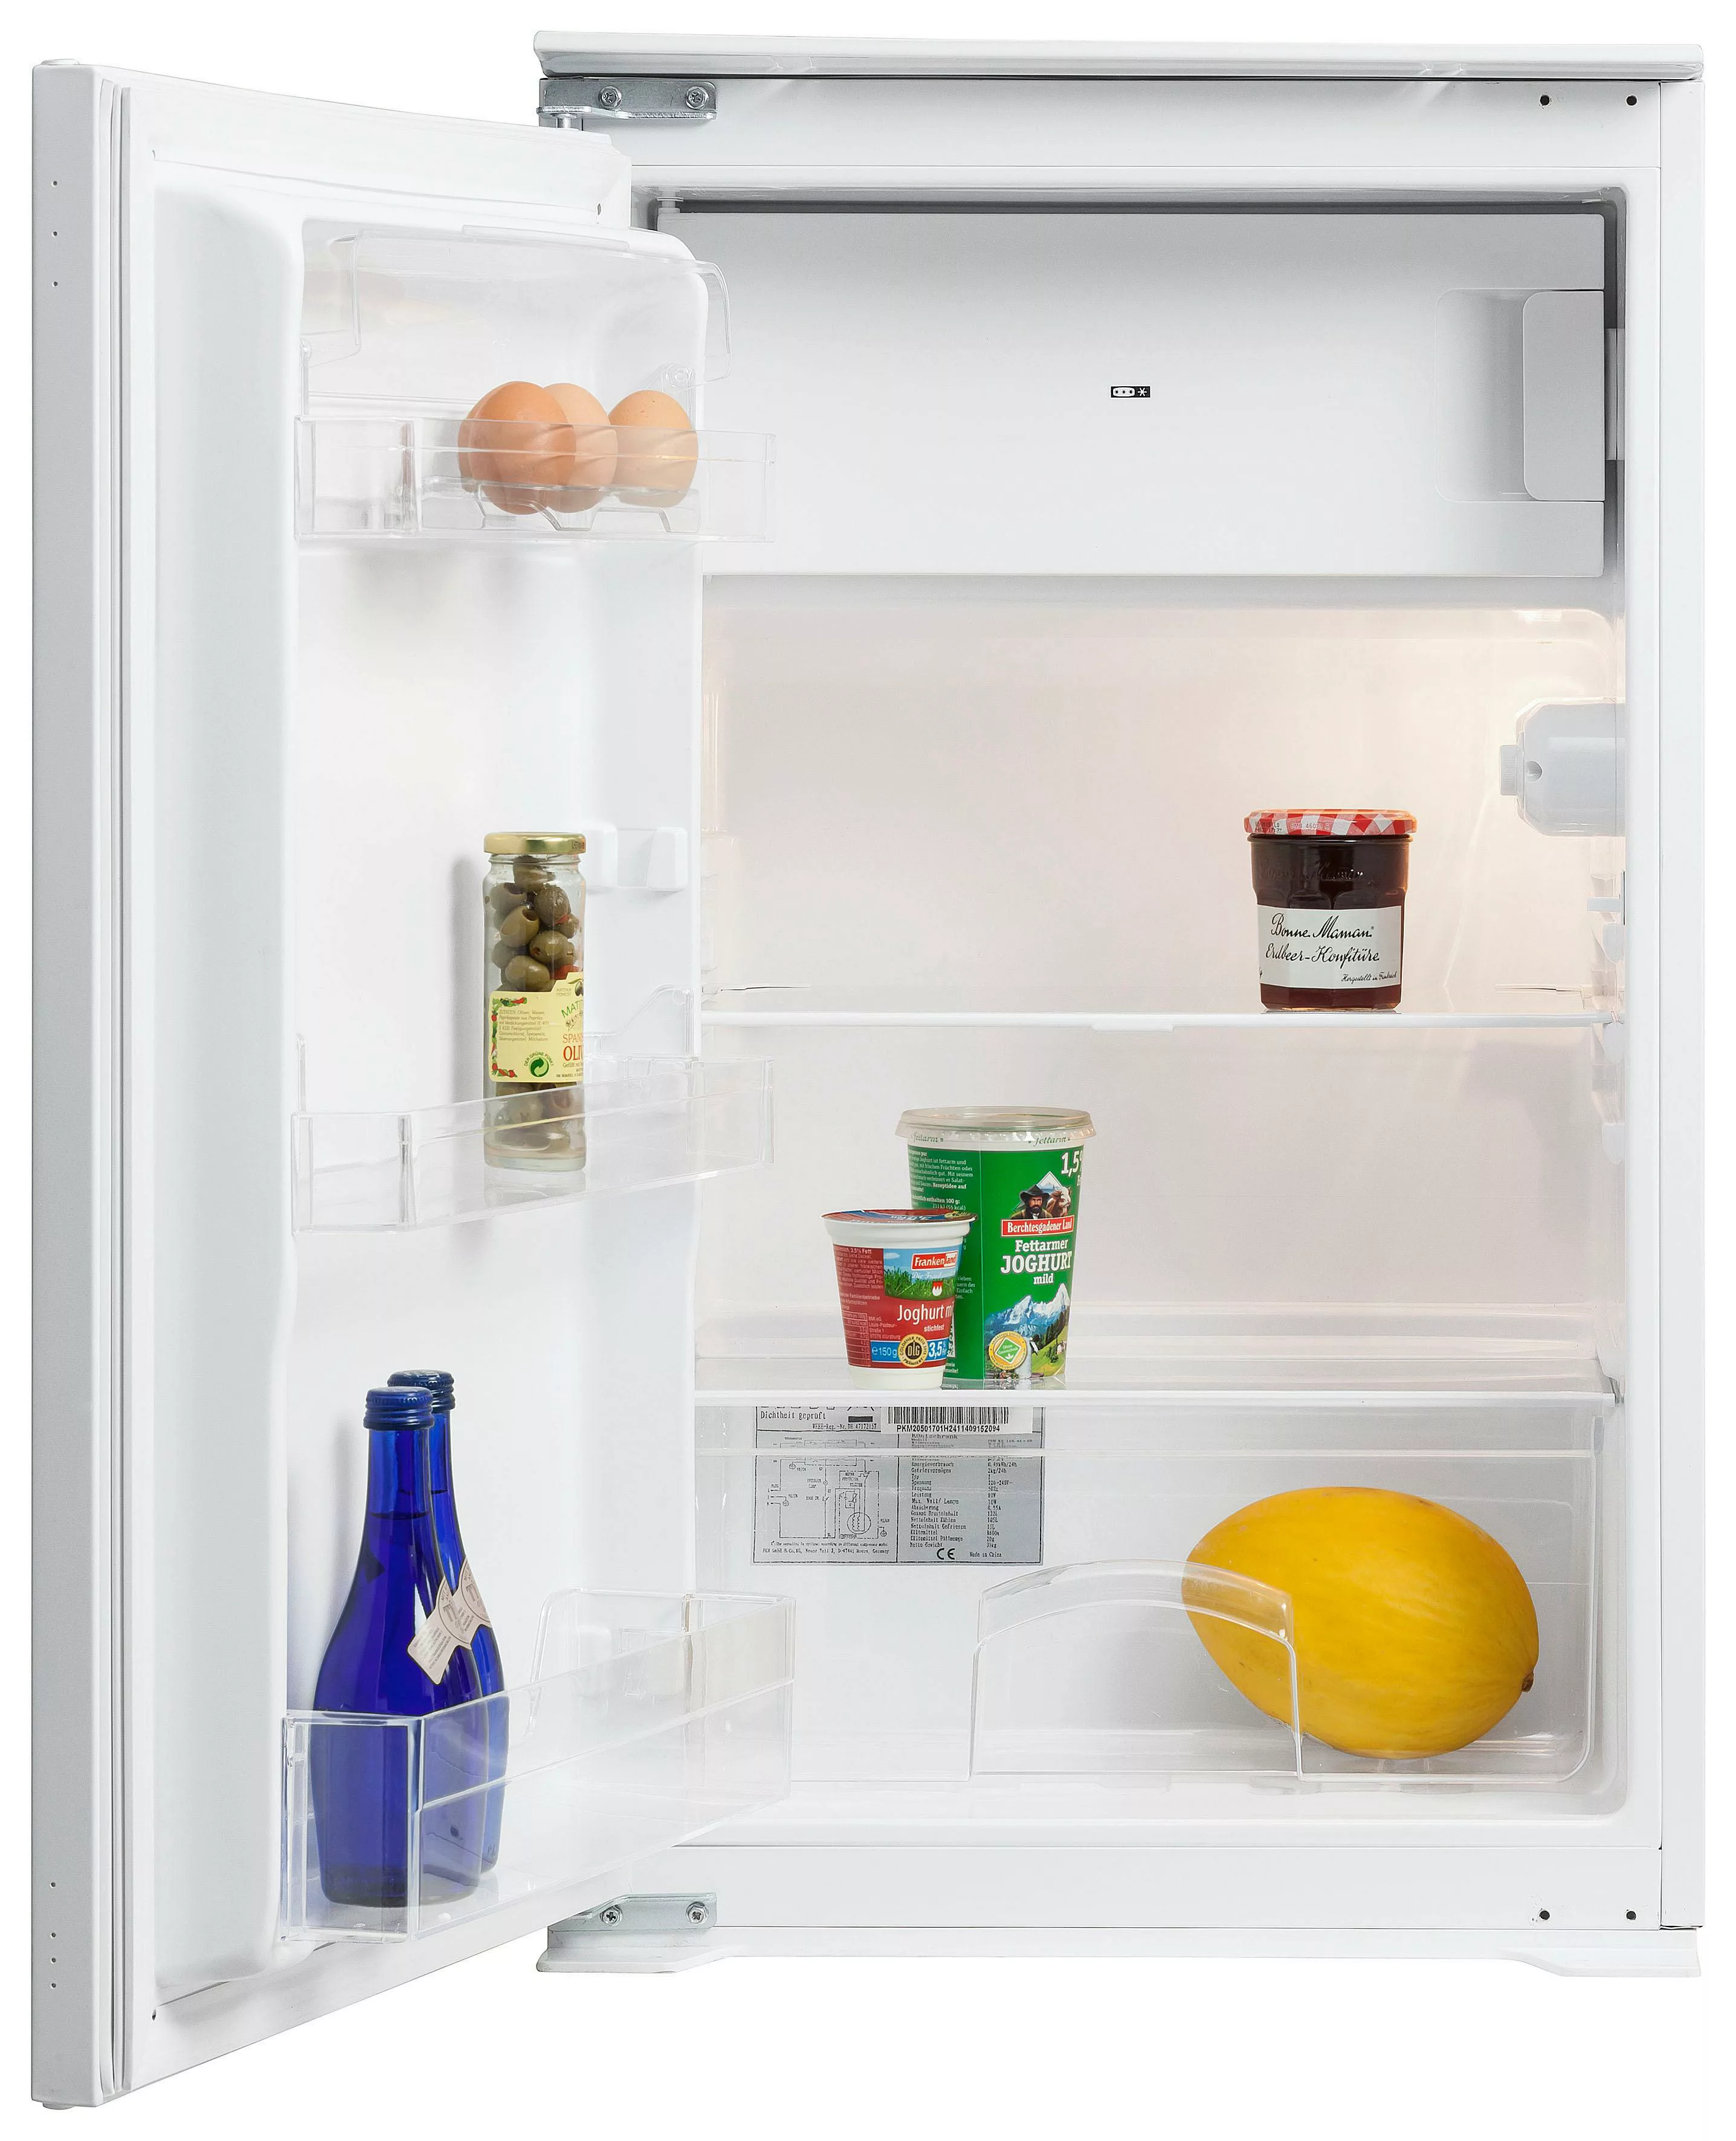 HELD MÖBEL Küchenzeile "Visby", mit E-Geräten, Breite 300 cm inkl. Kühlschr günstig online kaufen